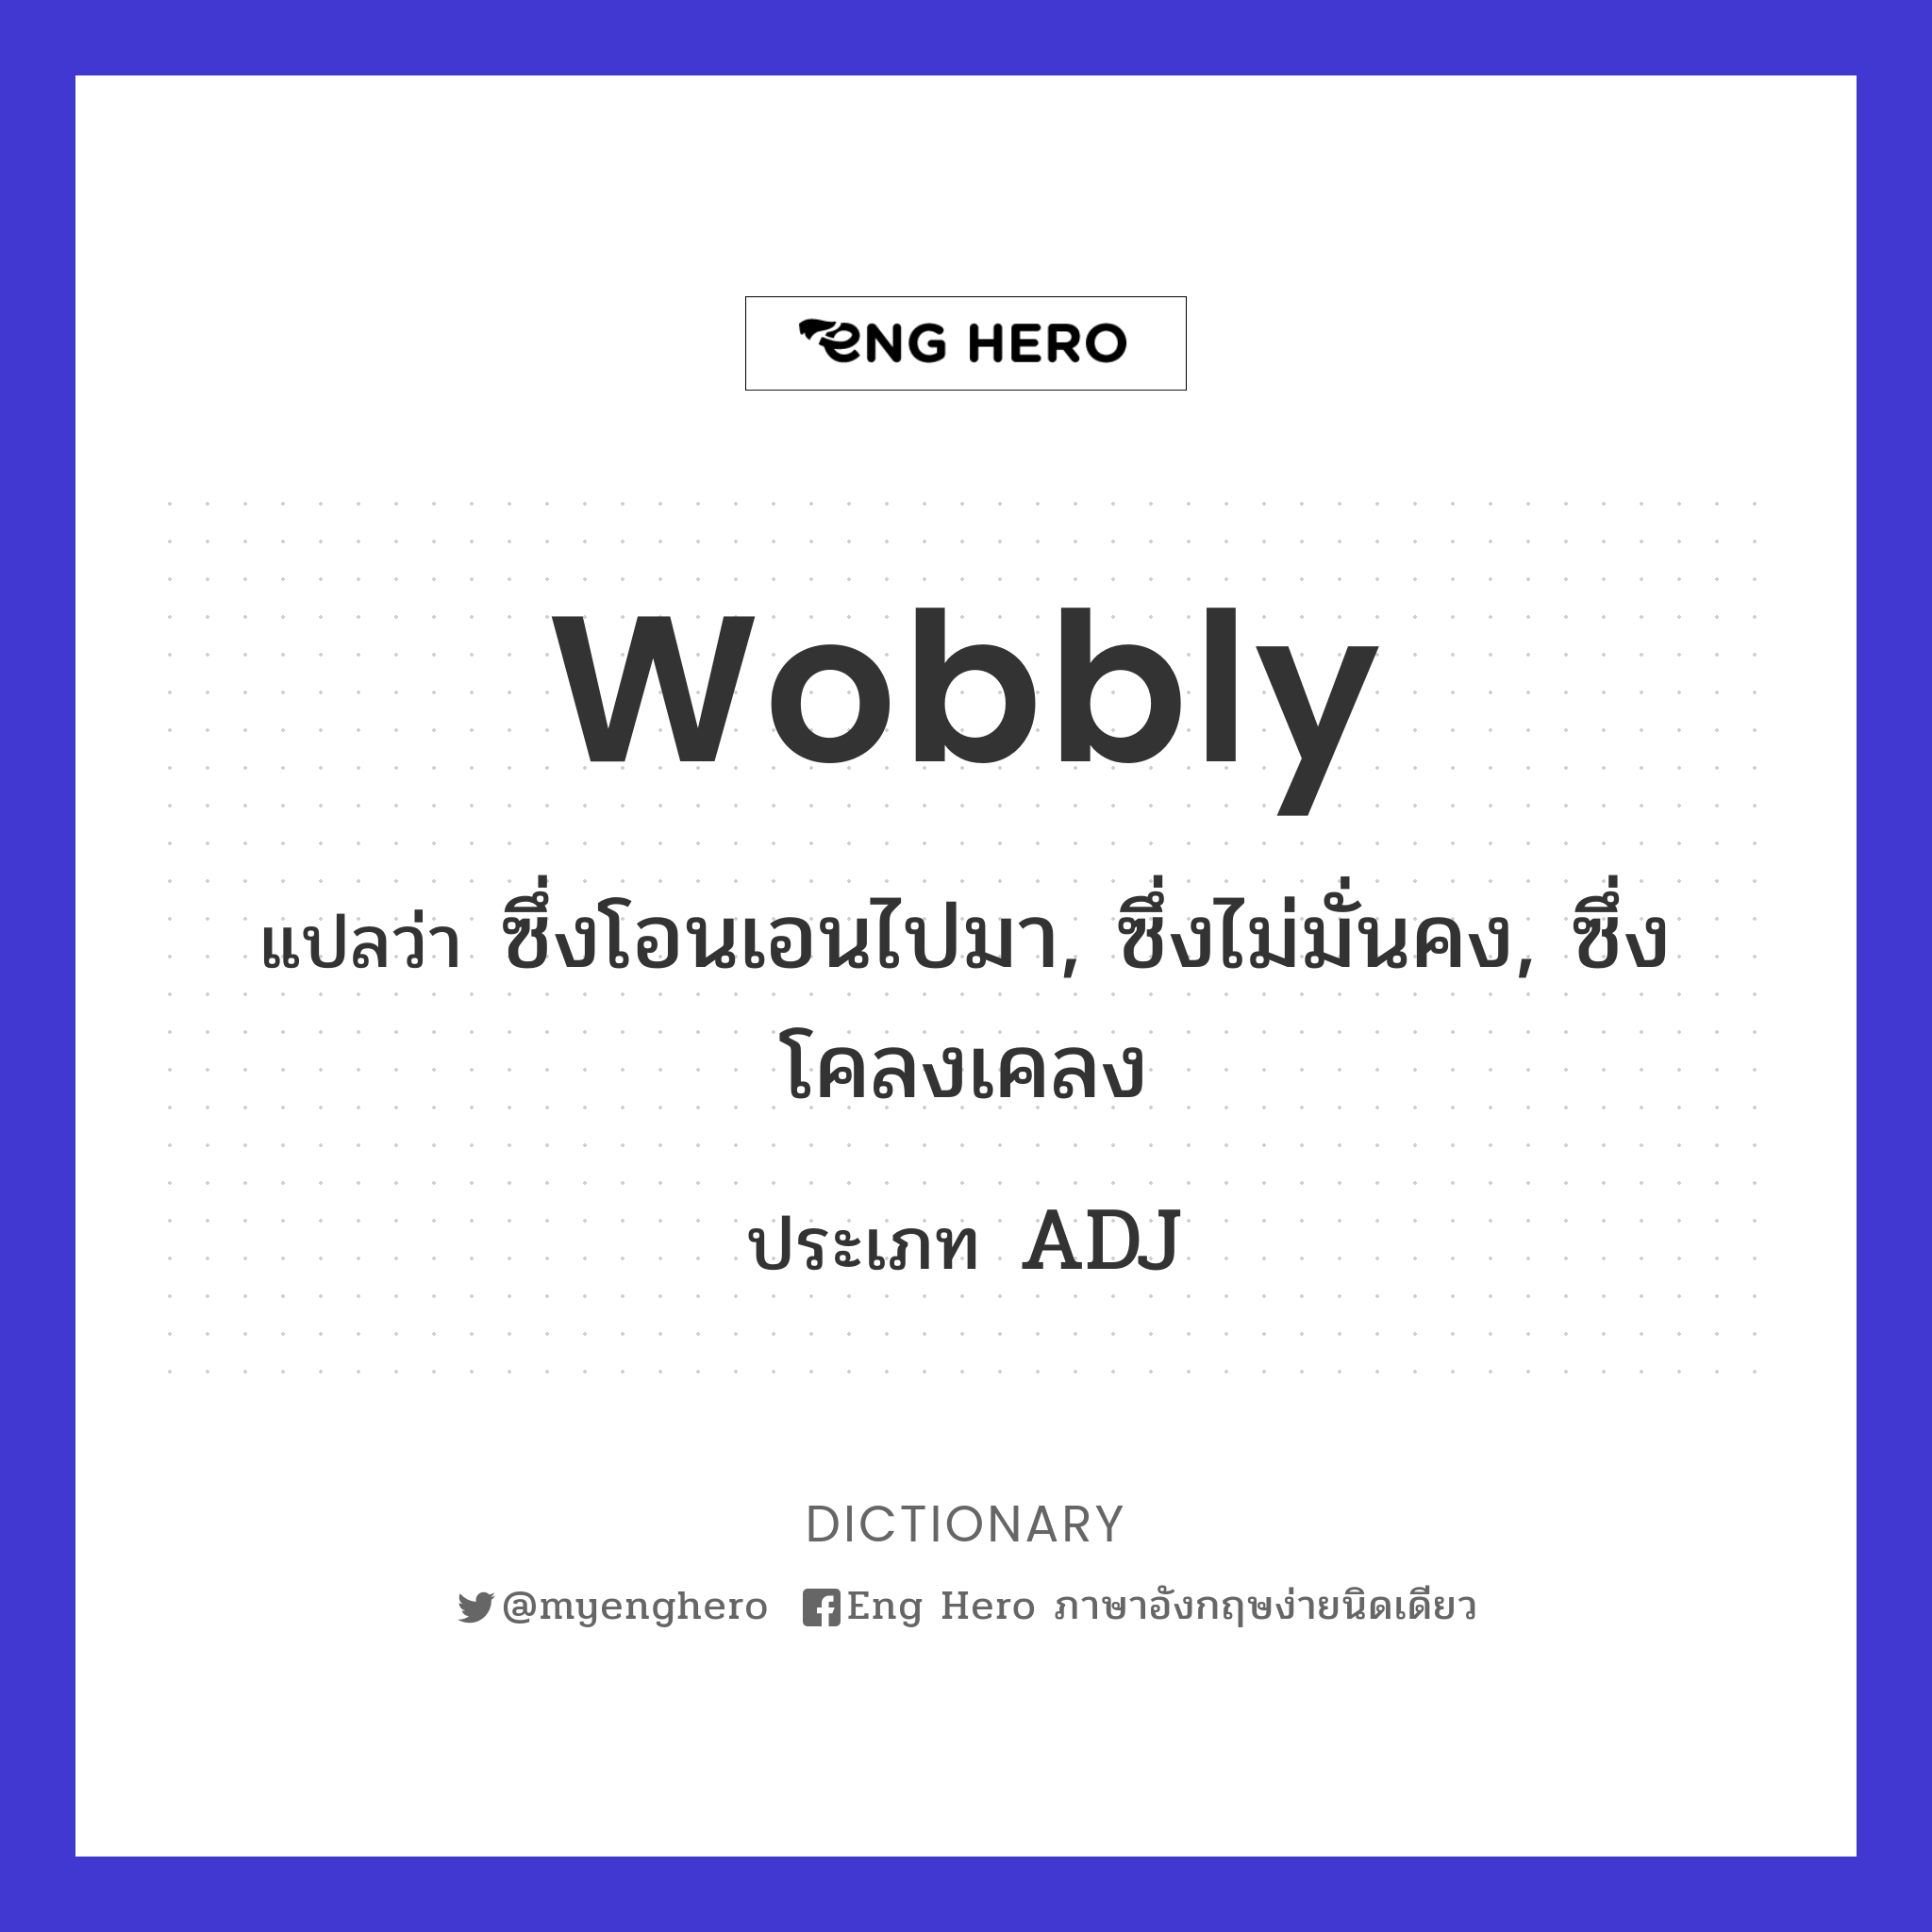 wobbly